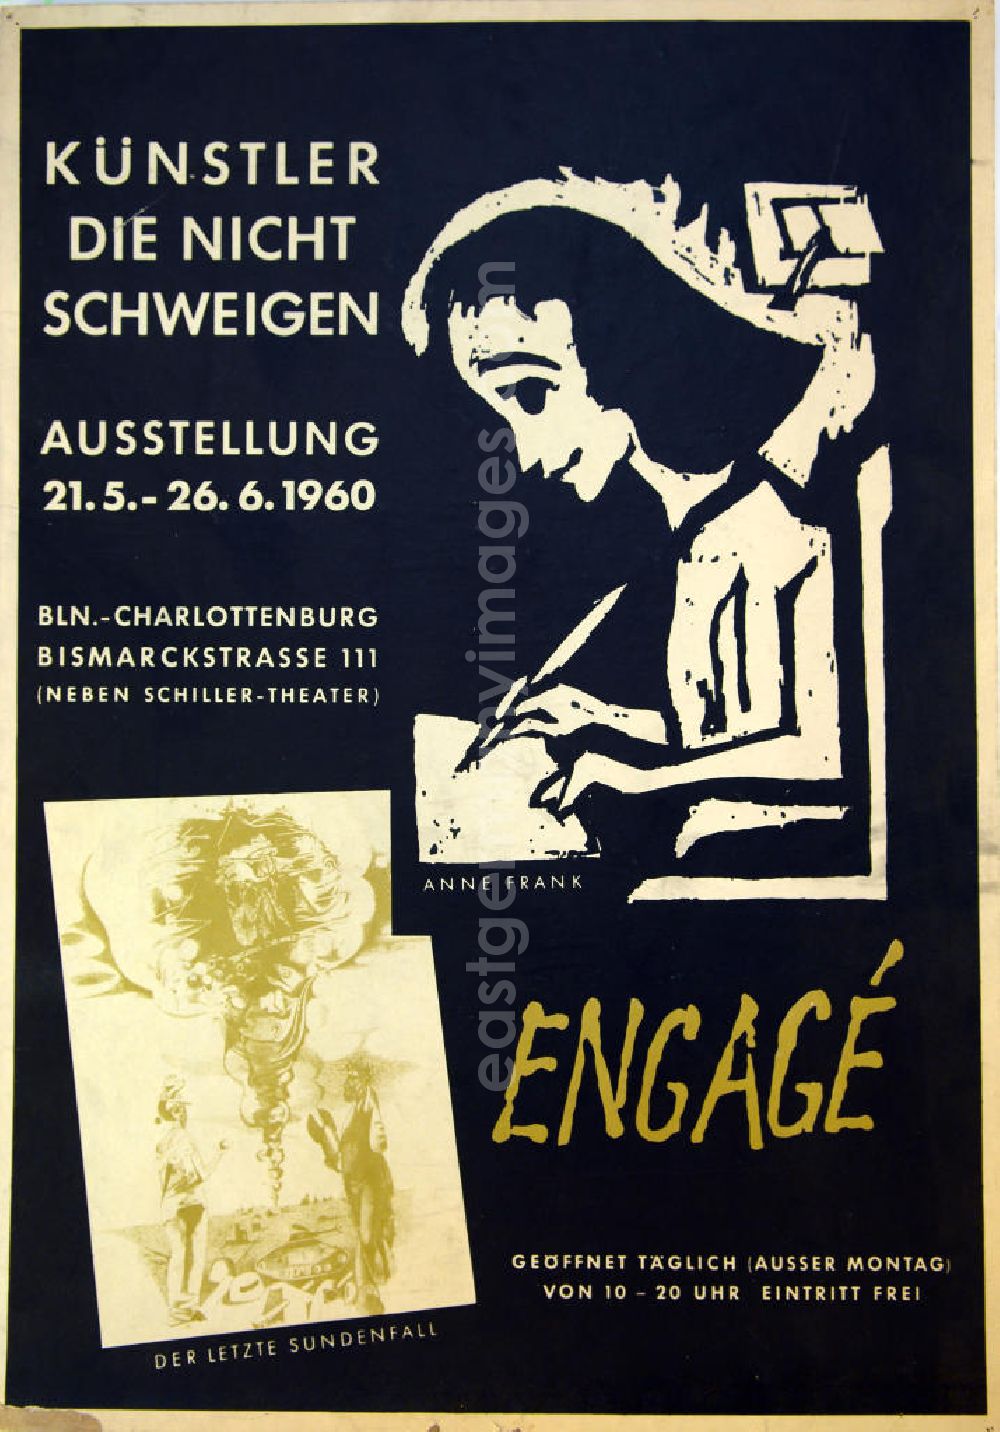 GDR photo archive: Berlin - Plakat der Ausstellung Künstler, die nicht schweigen, Engagé über Herbert Sandberg vom 21.05.-26.06.1960 in Berlin-Charlottenburg, 40,